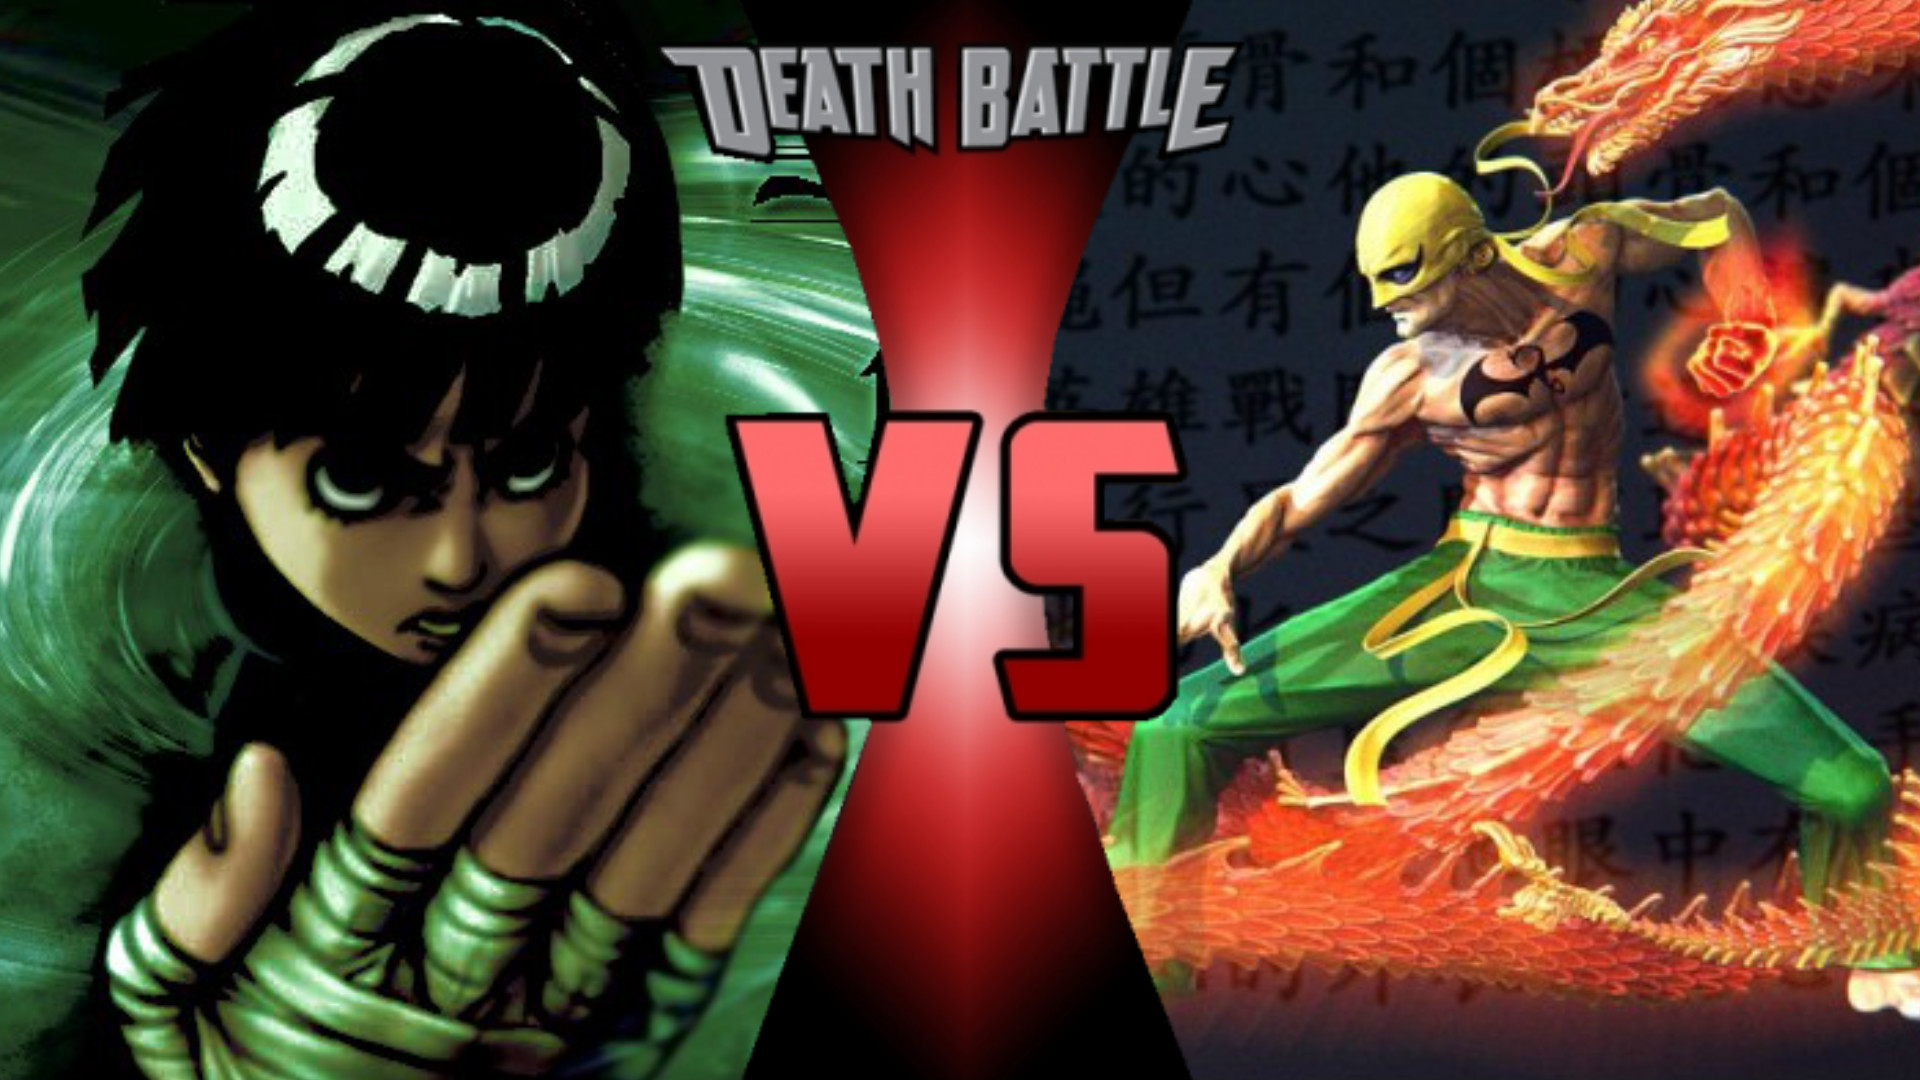 1920x1080 Iron Fist VS Rock Lee | Death Battle Fanon Wiki | FANDOM powered by Wikia